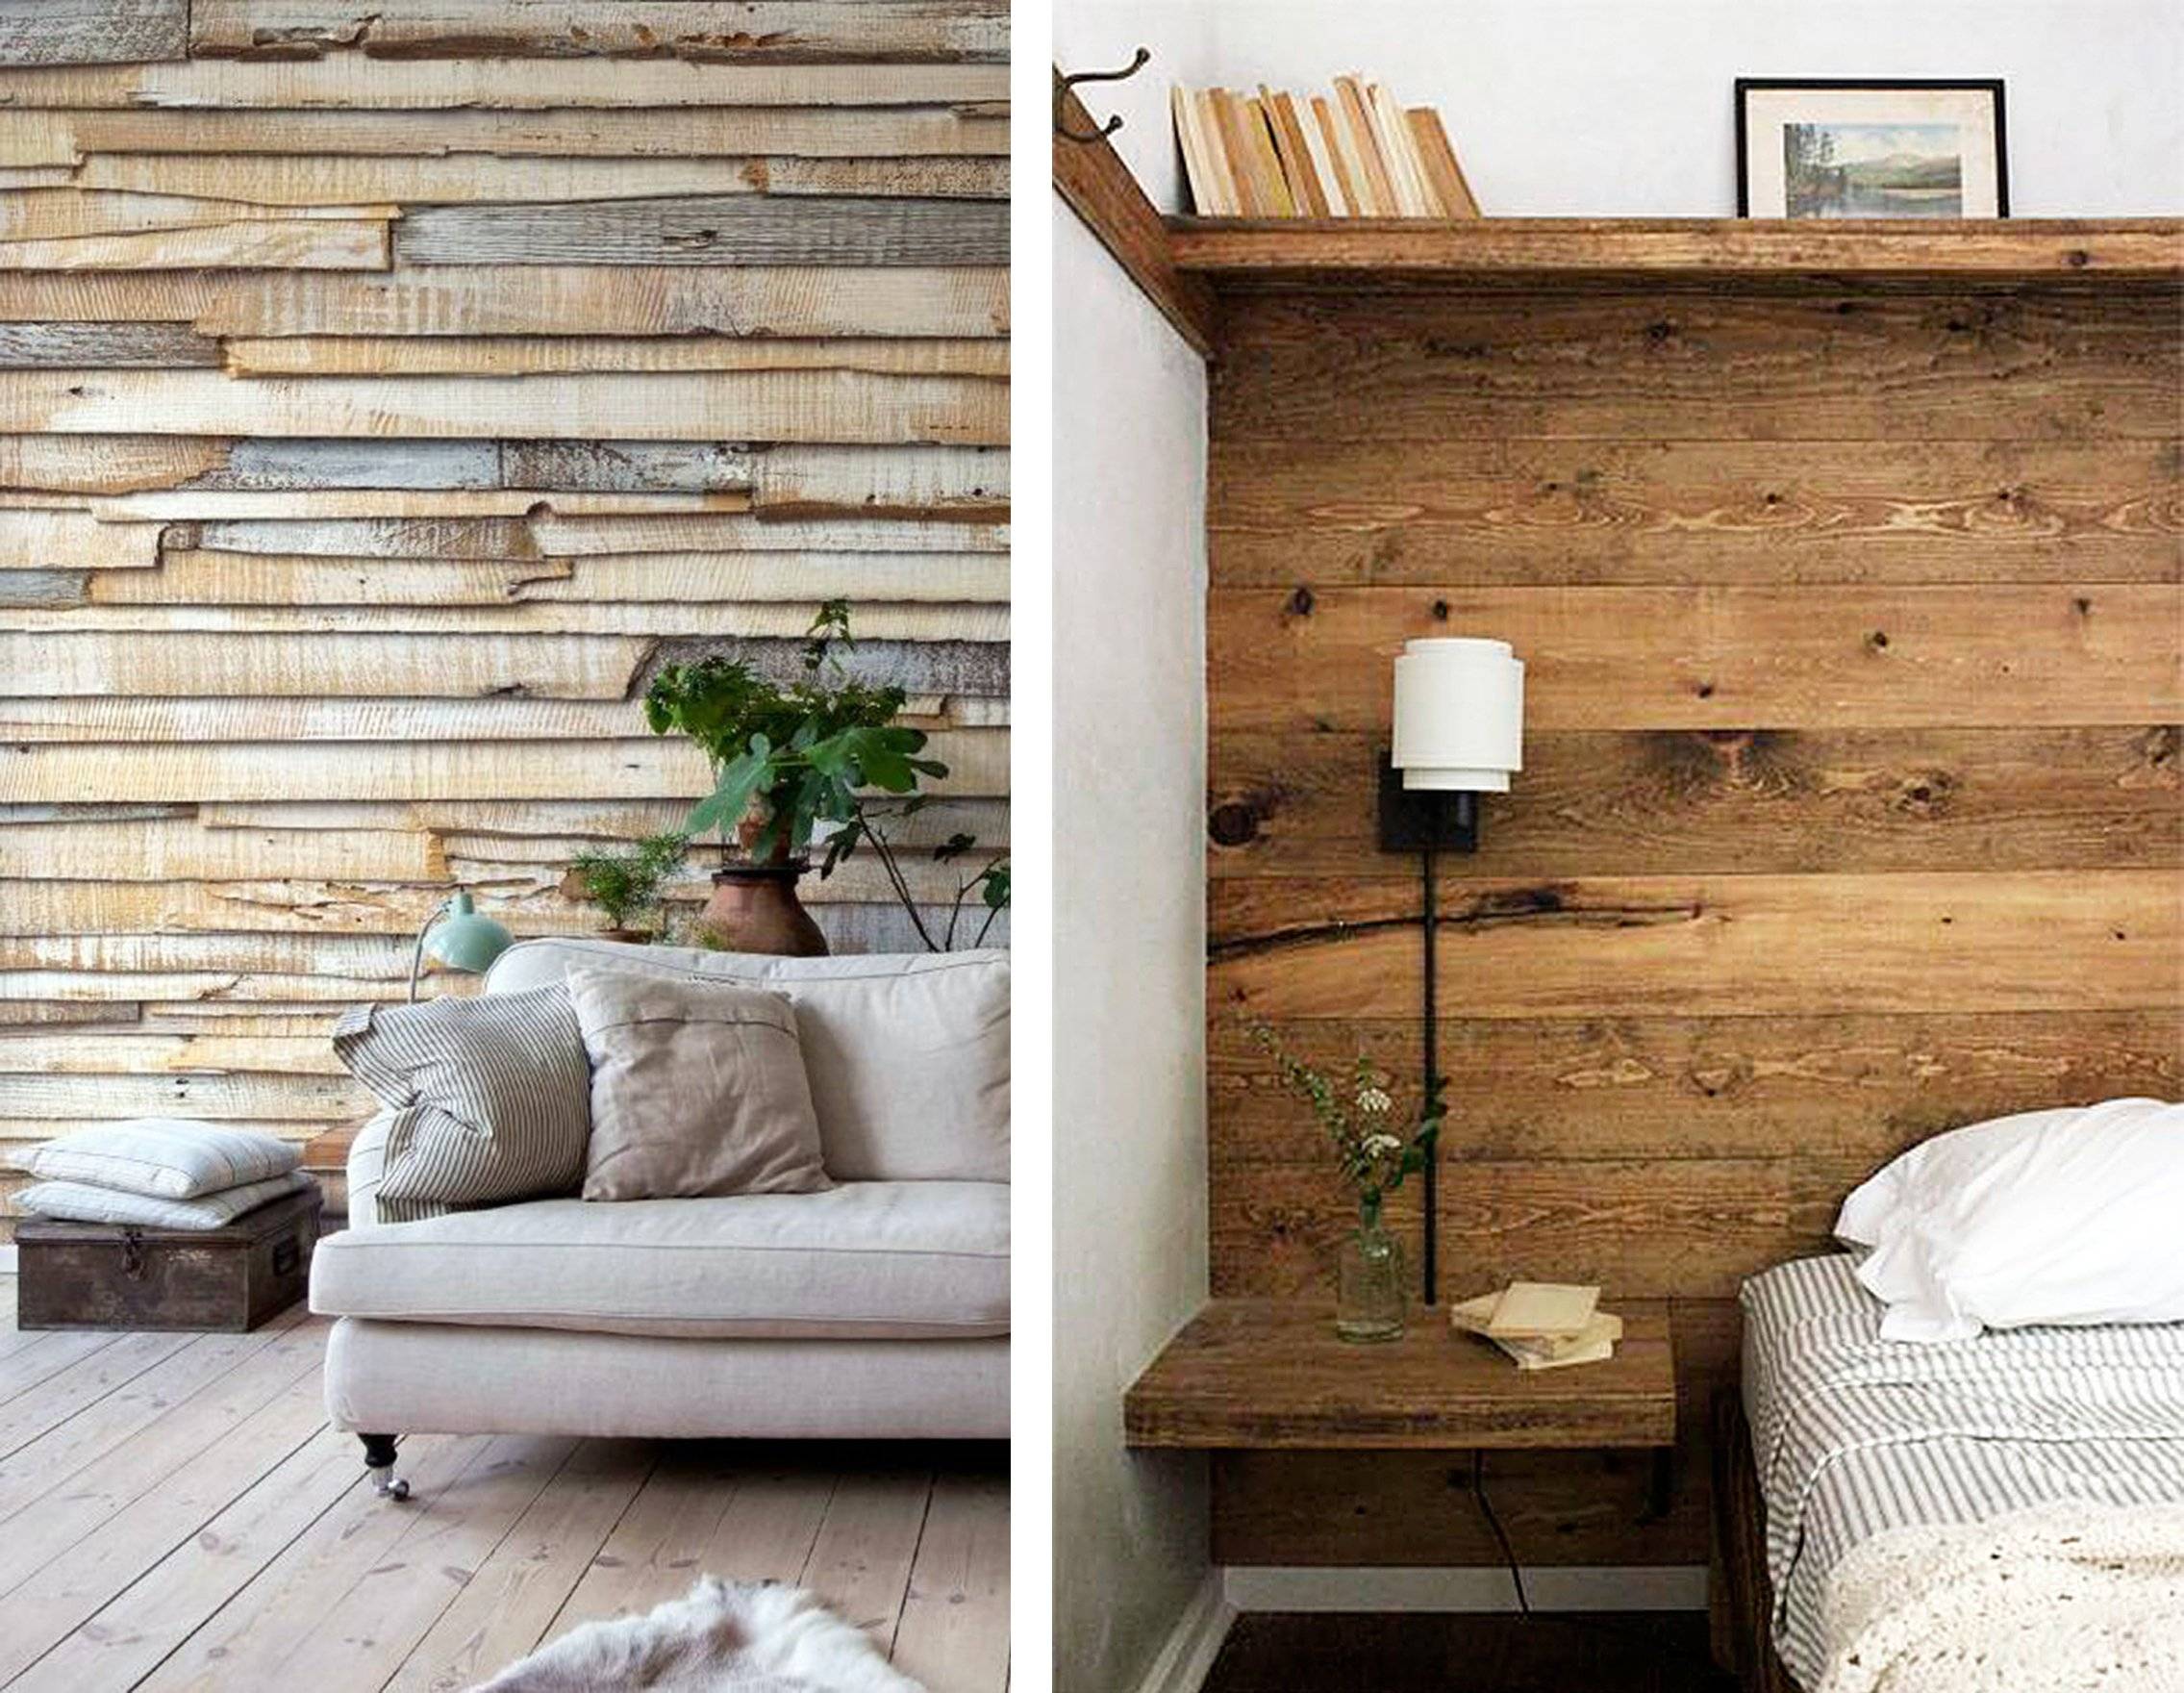 Обои под дерево для стен: виды и критерии выбора и нанесения а также имитация текстуры древесины в интерьере включая особенности отделки